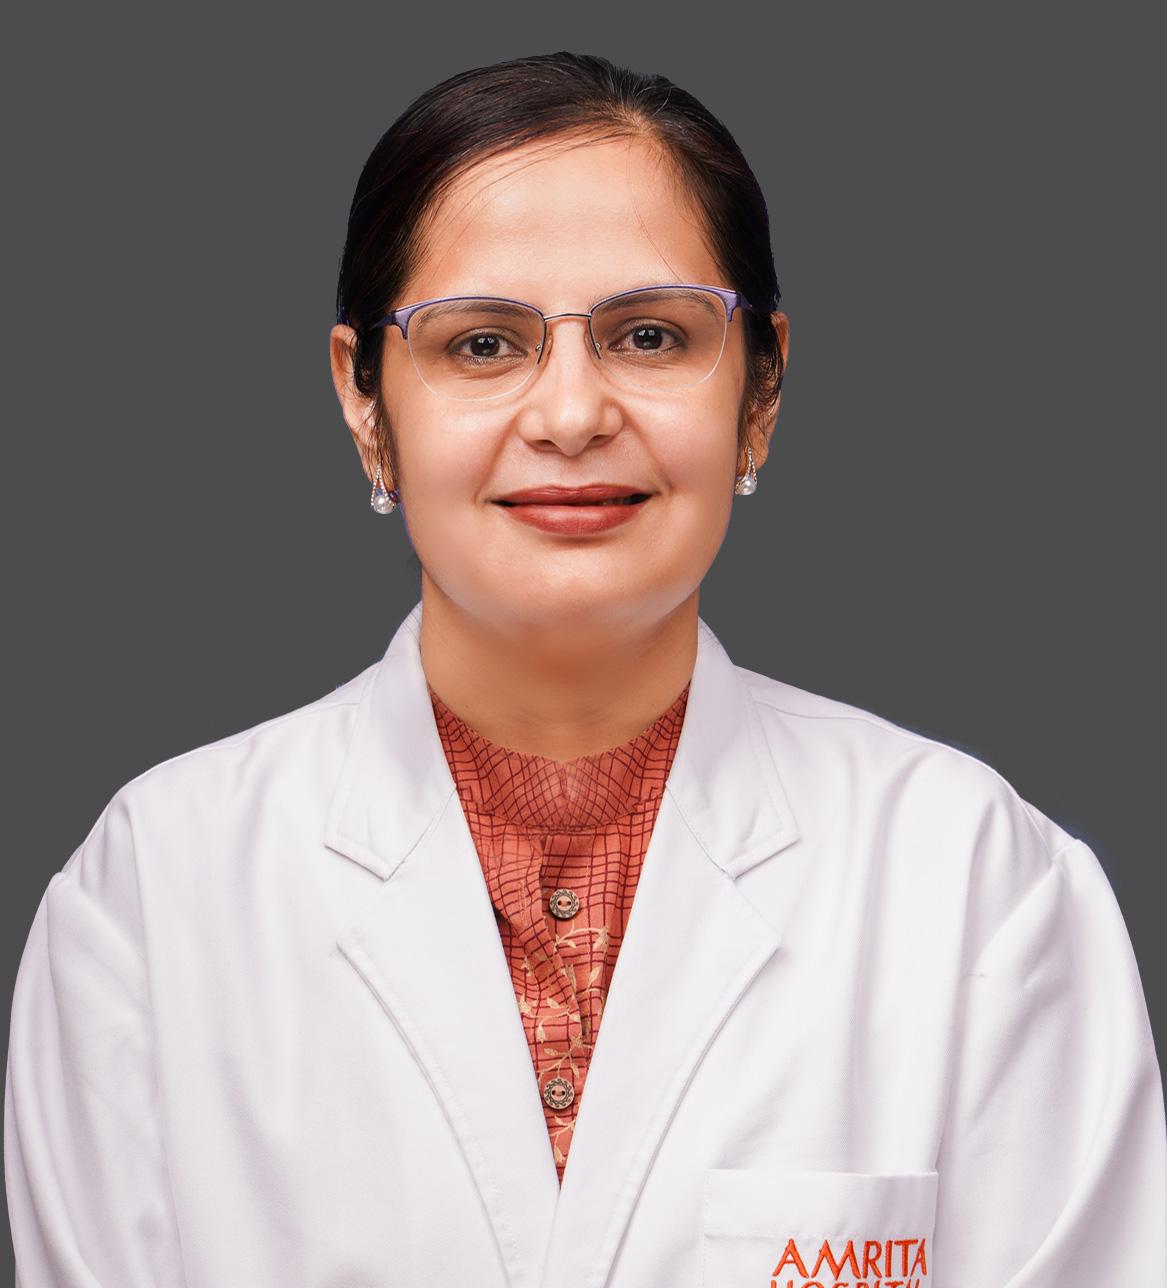 Dr. Priyanka Madaan